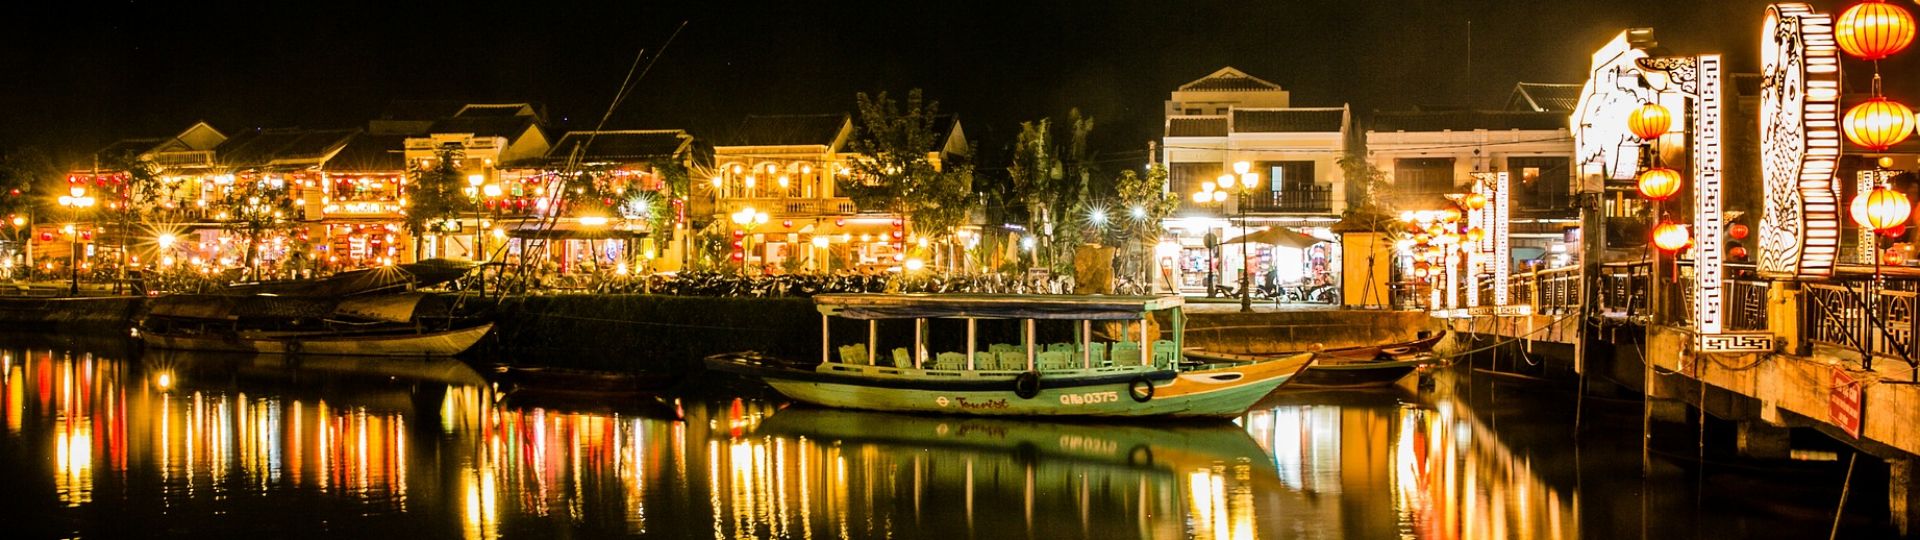 Hotels in Hoi An, Vietnam